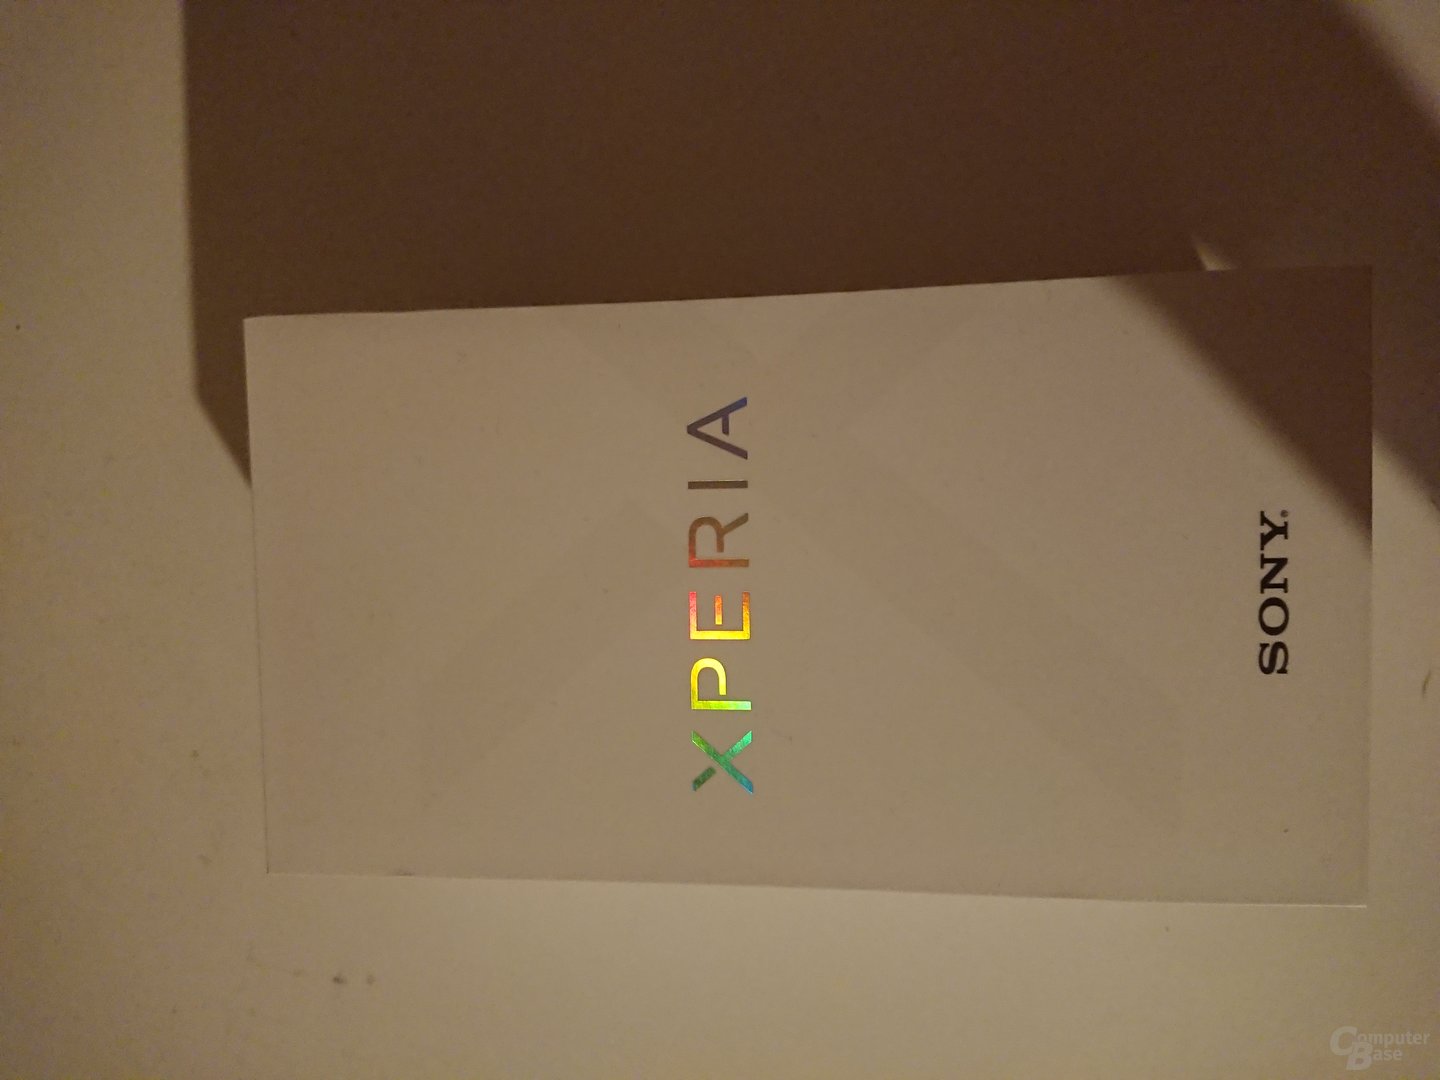 Sony Xperia XZ Premium im Test – Nacht